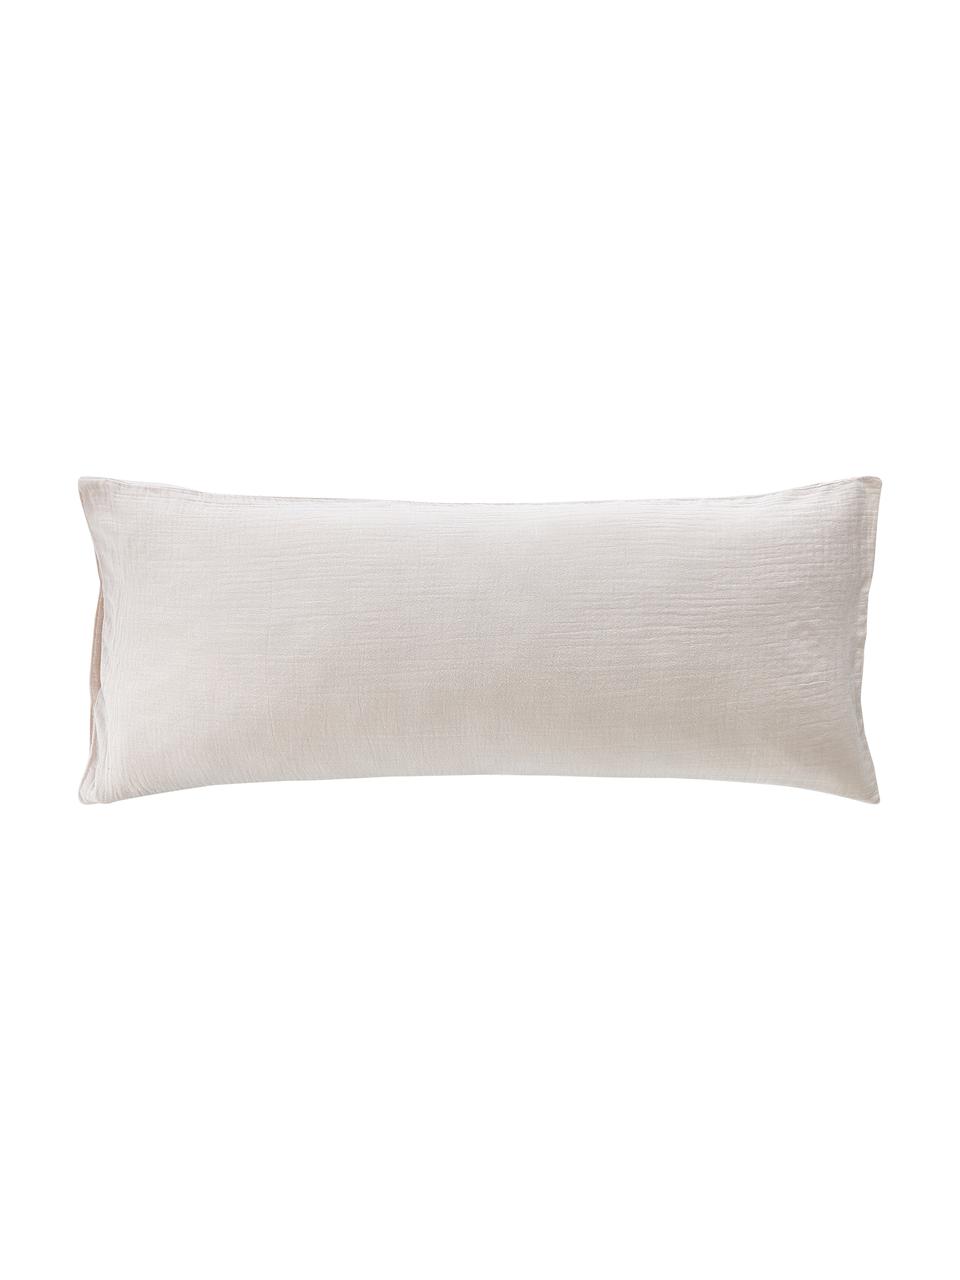 Funda de almohada muselina de algodón Odile, Beige, 45 x 110 cm